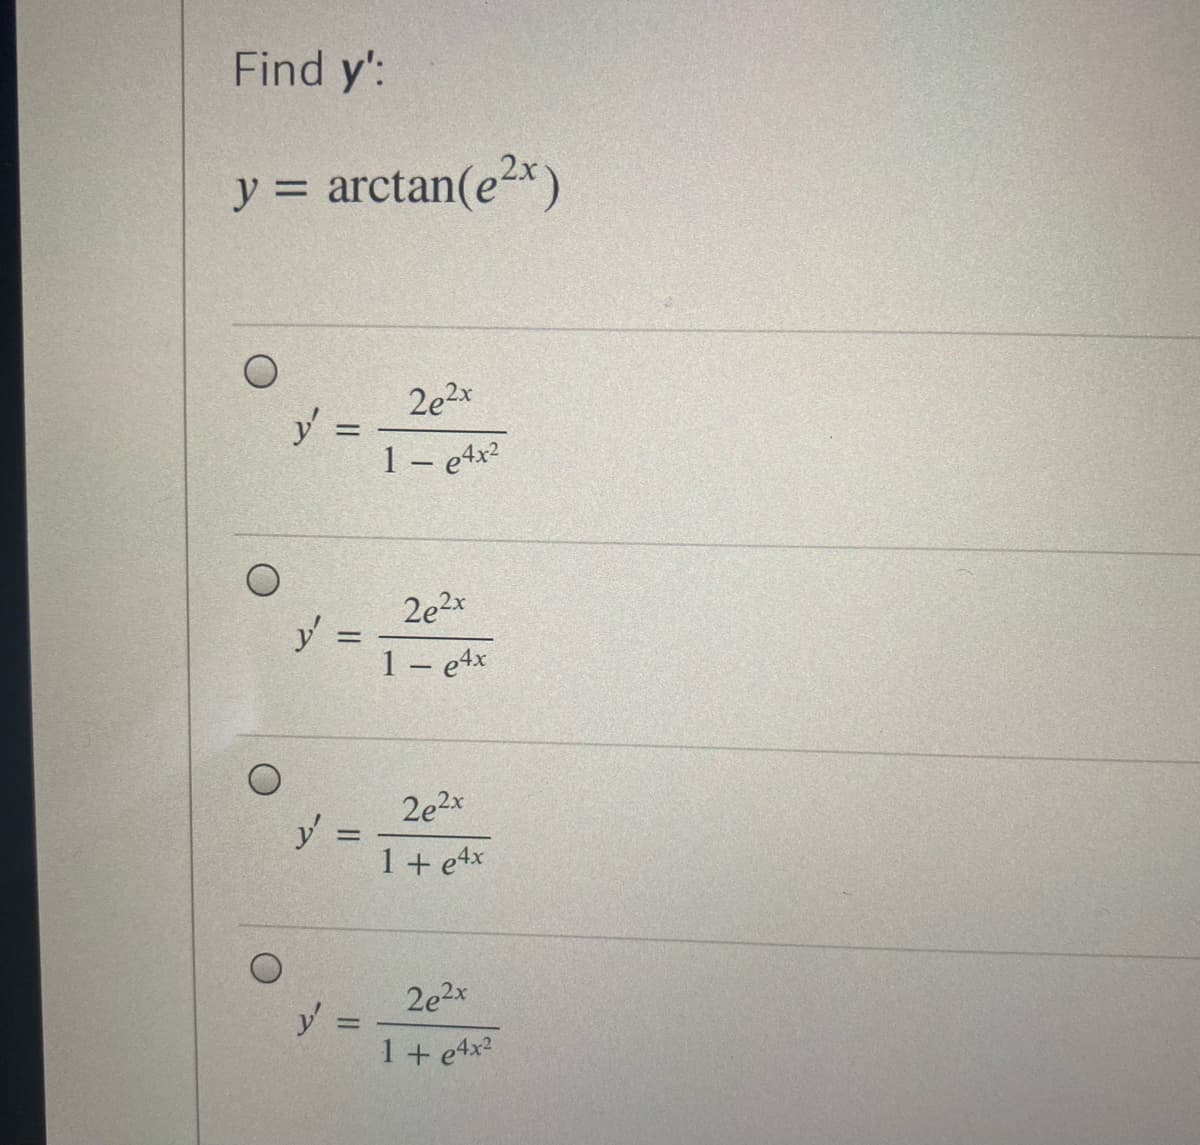 Find y':
y = arctan(e2x)
2e2x
y =
1 – etx?
2e2x
1 – e4x
2e2x
y
1 + e4x
2e2x
1 + e4x?
